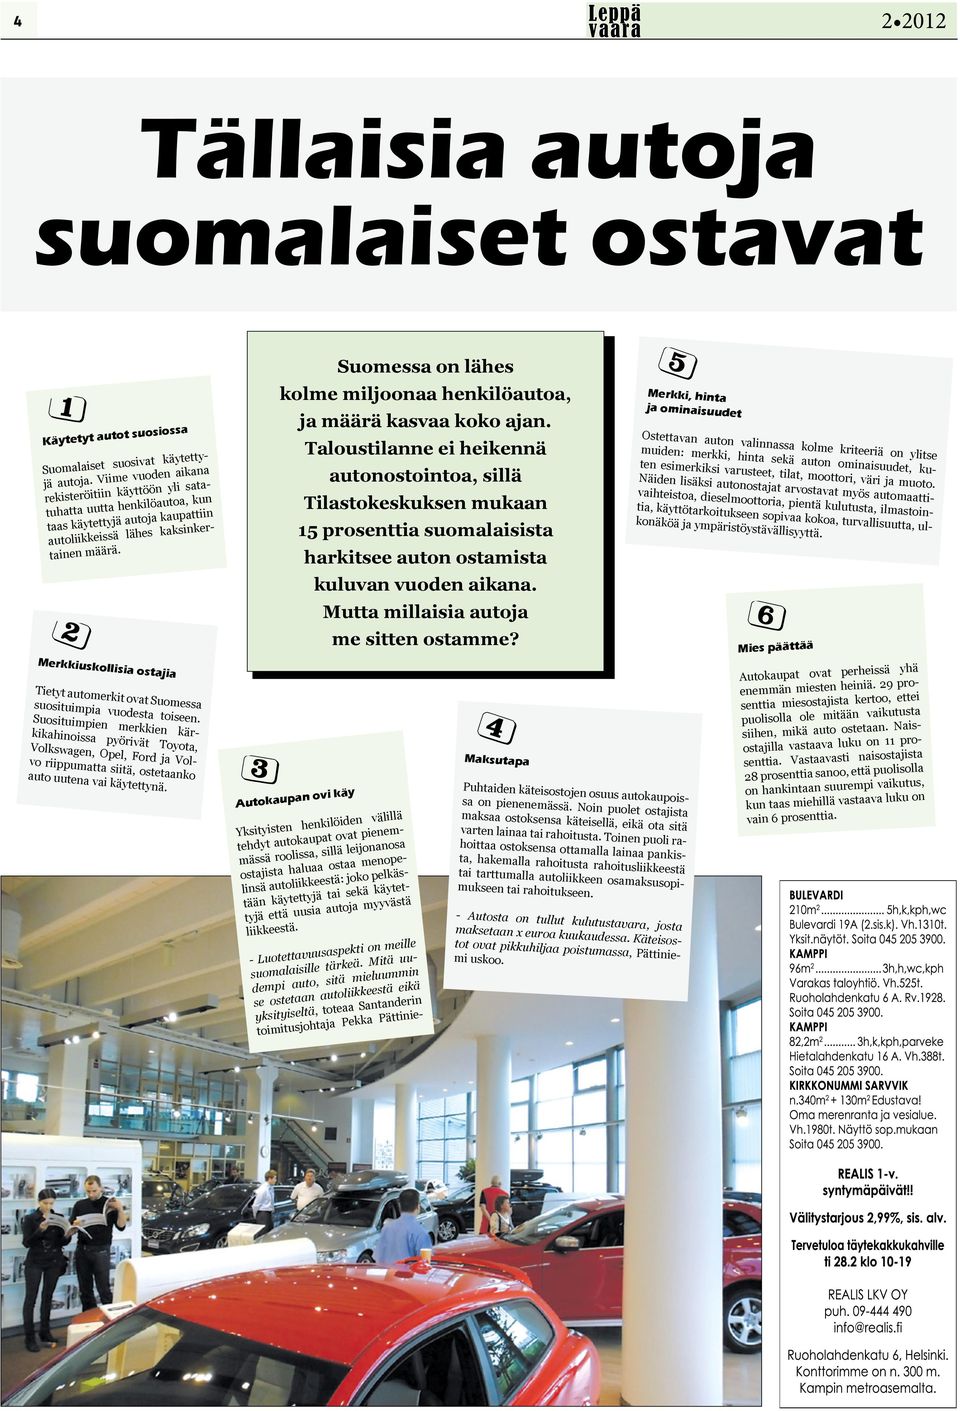 Merkkiuskollisia ostajia Tietyt automerkit ovat Suomessa suosituimpia vuodesta toiseen.